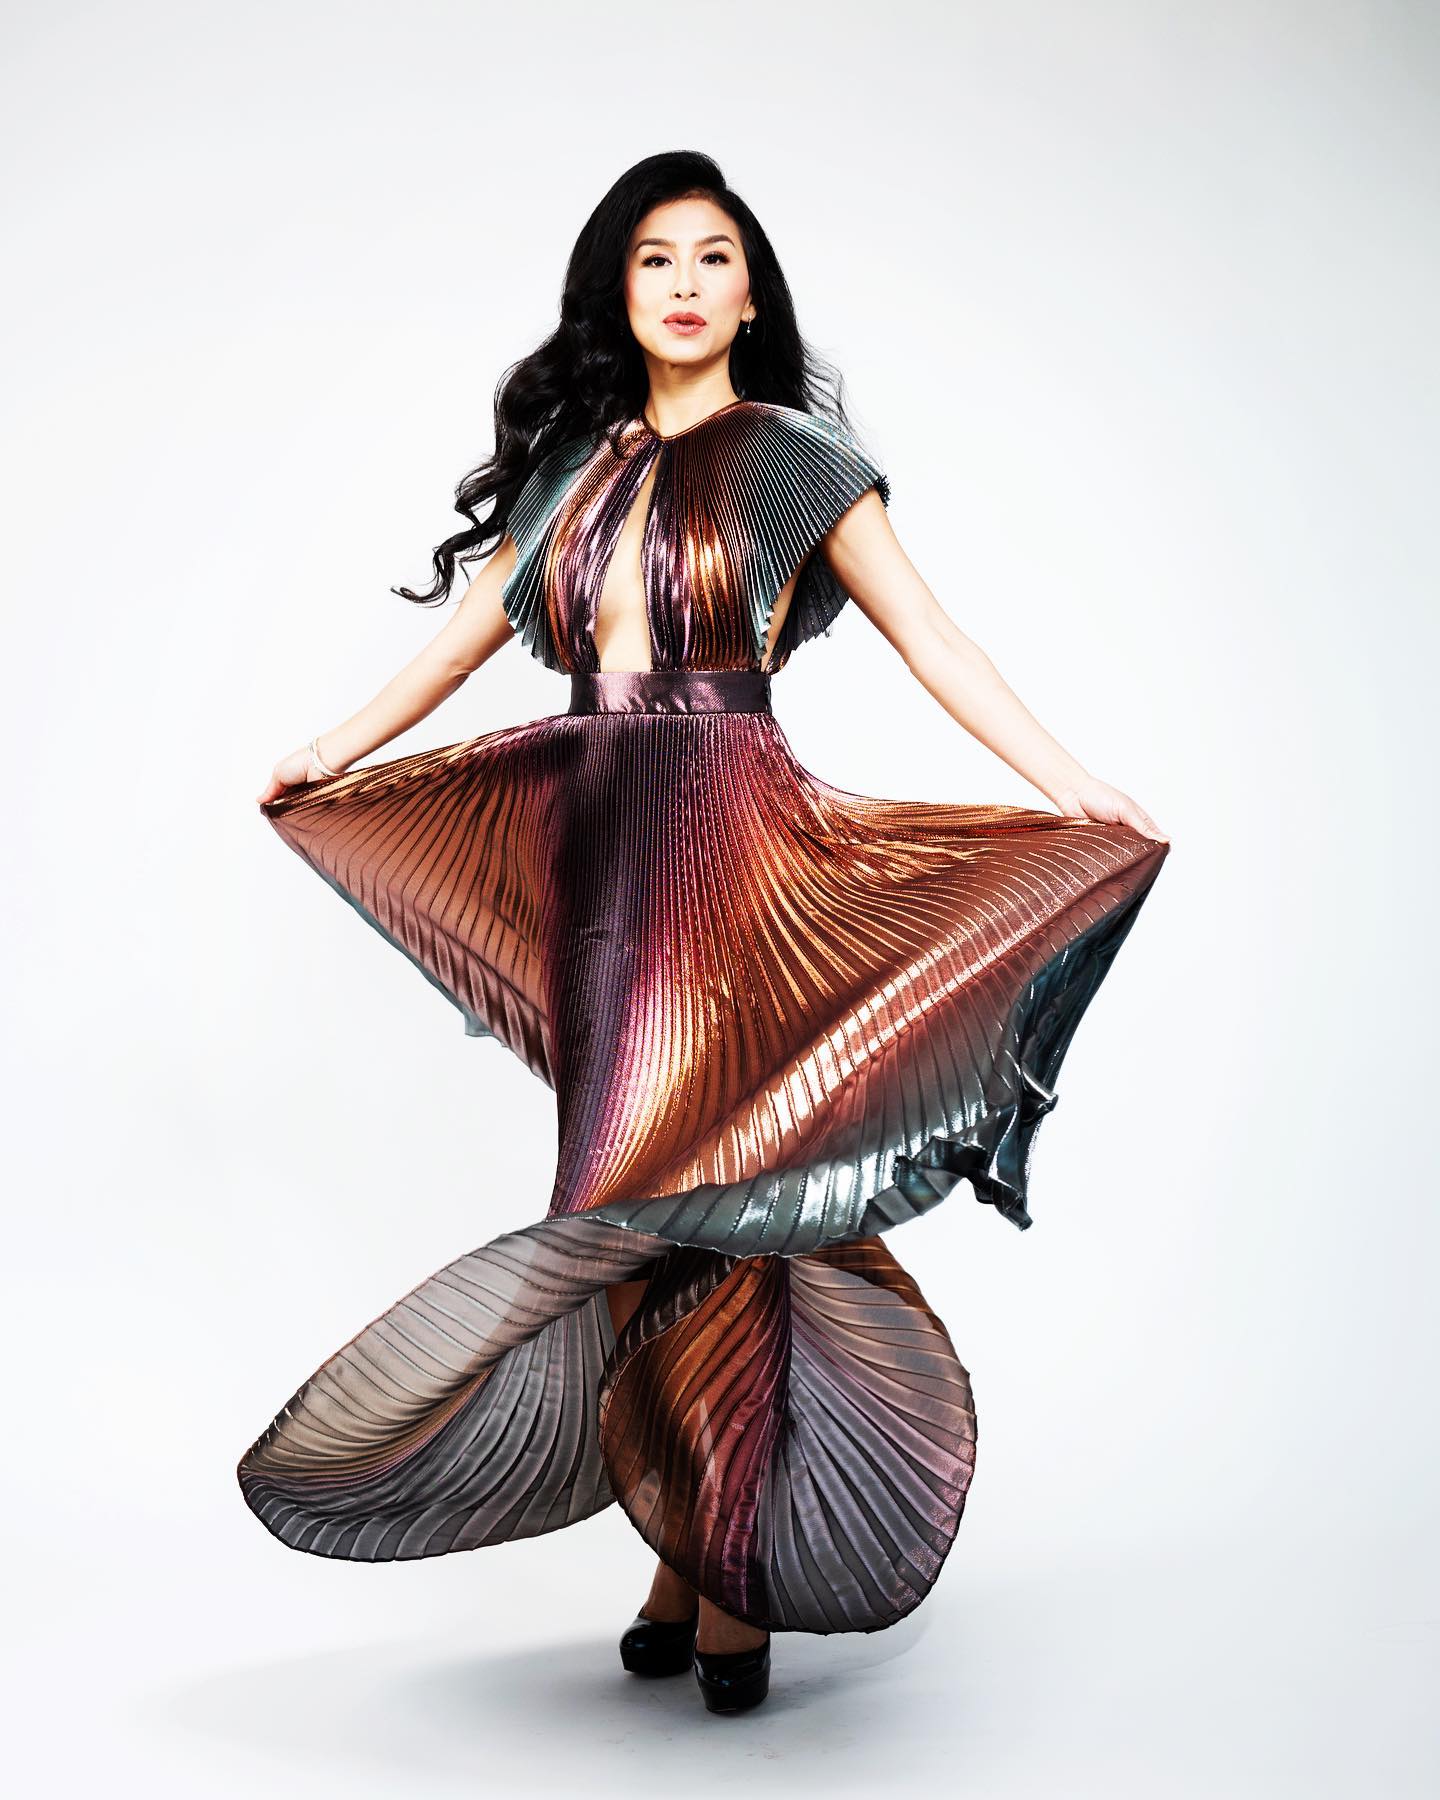 Teresa Mai là ai? Ca sĩ người Mỹ gốc Việt giành giải Grammy 2022 - Ảnh 11